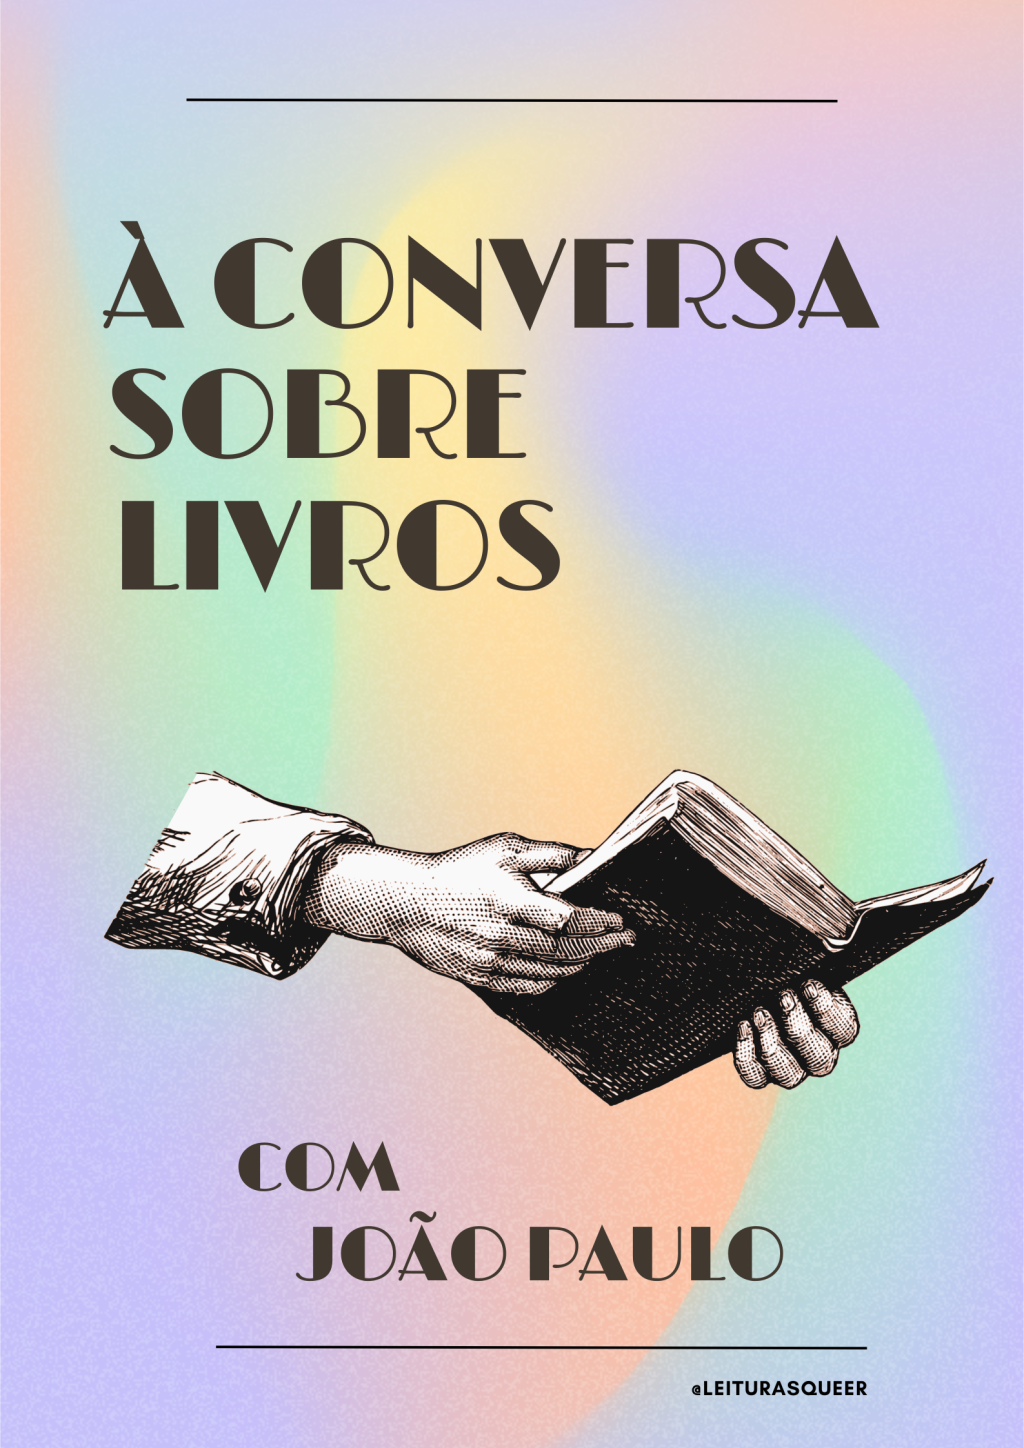 À Conversa sobre Livros com João Paulo